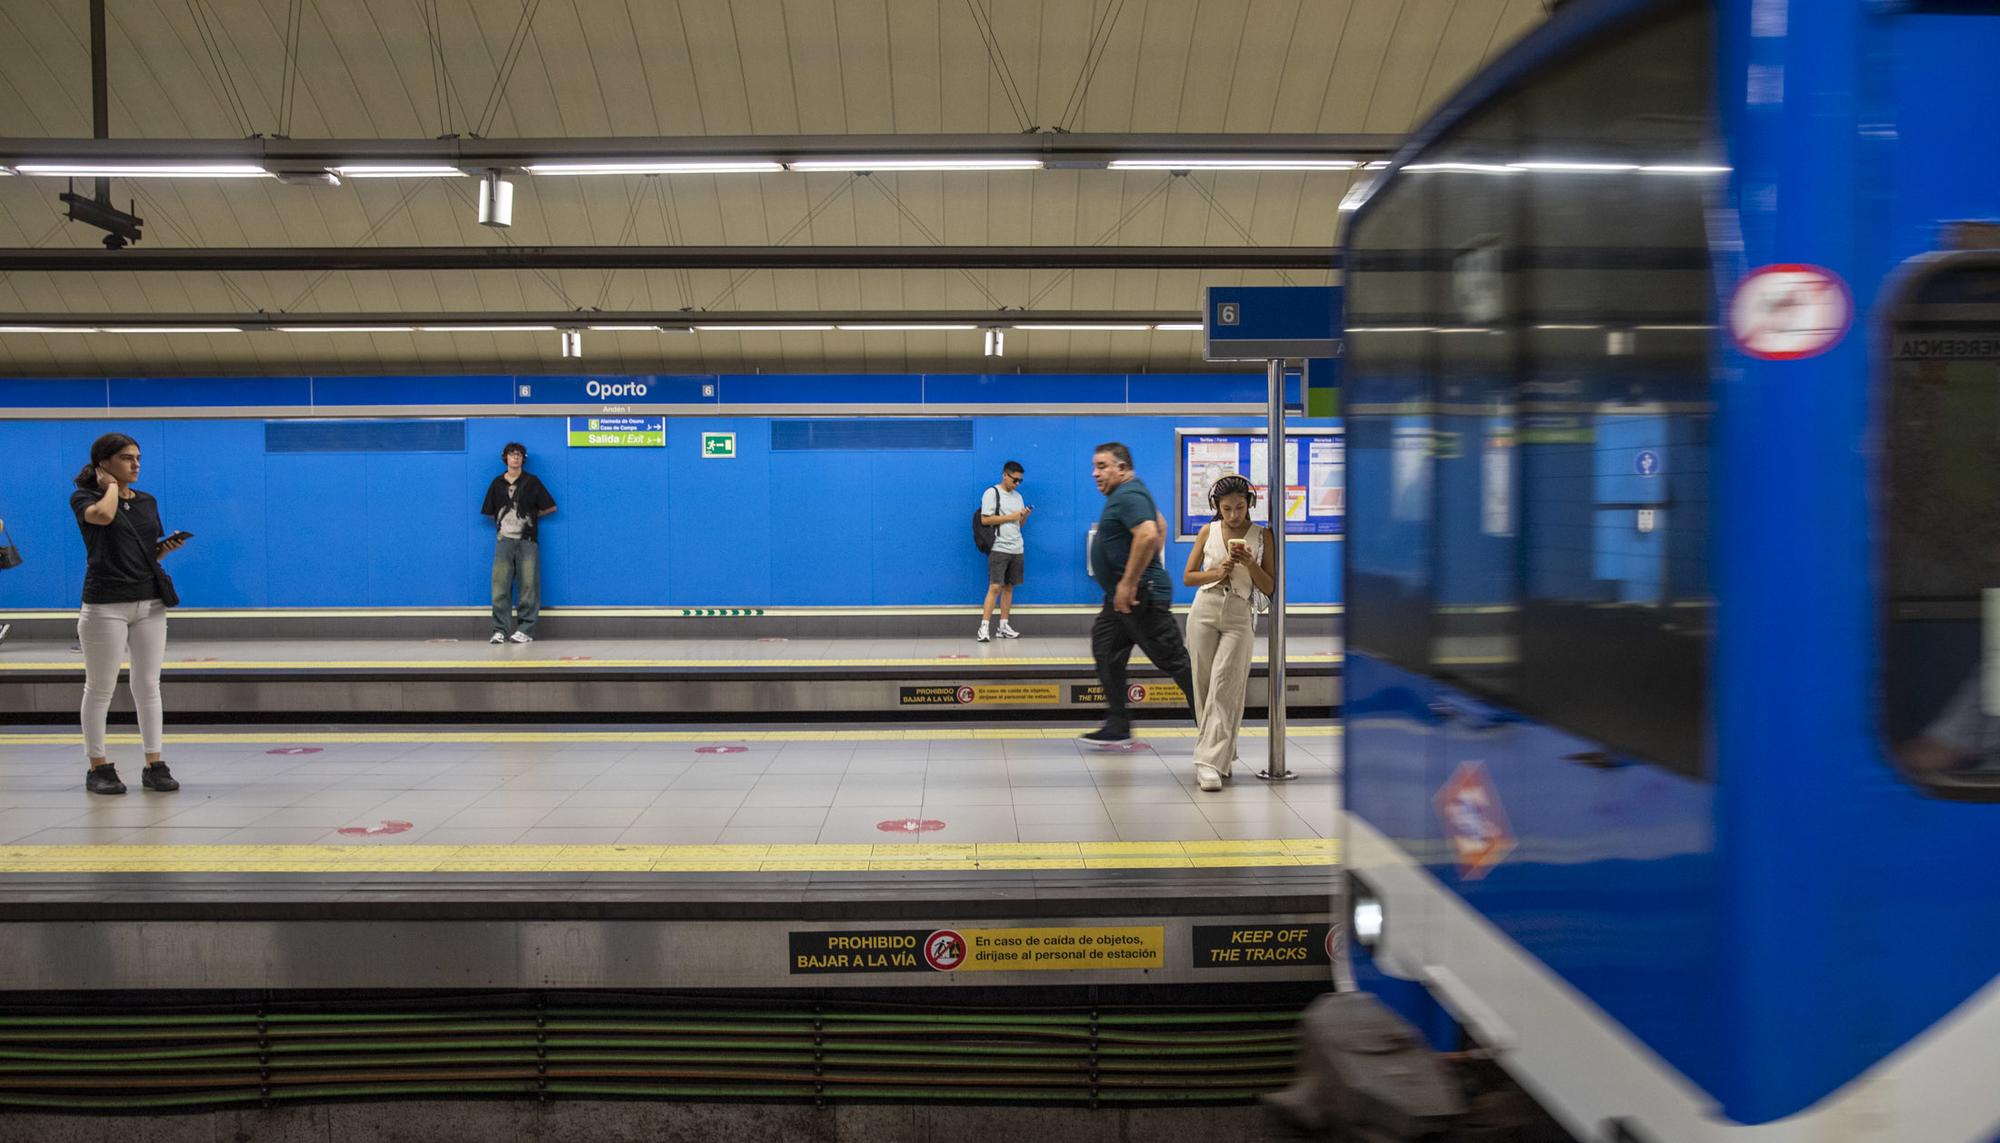 Metro estación Oporto 2